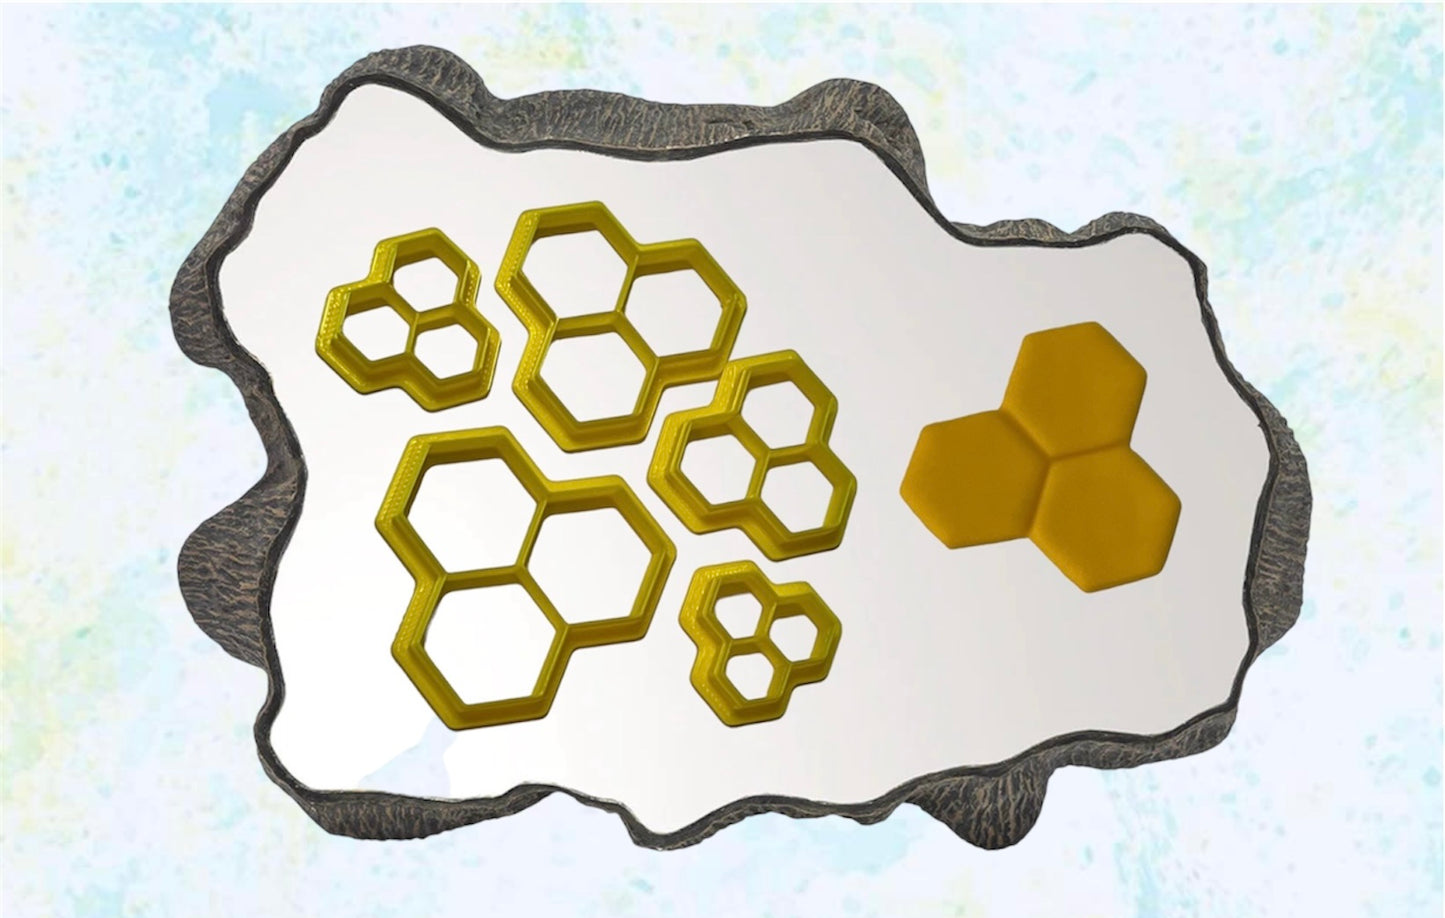 Honey Comb Imprint cutters